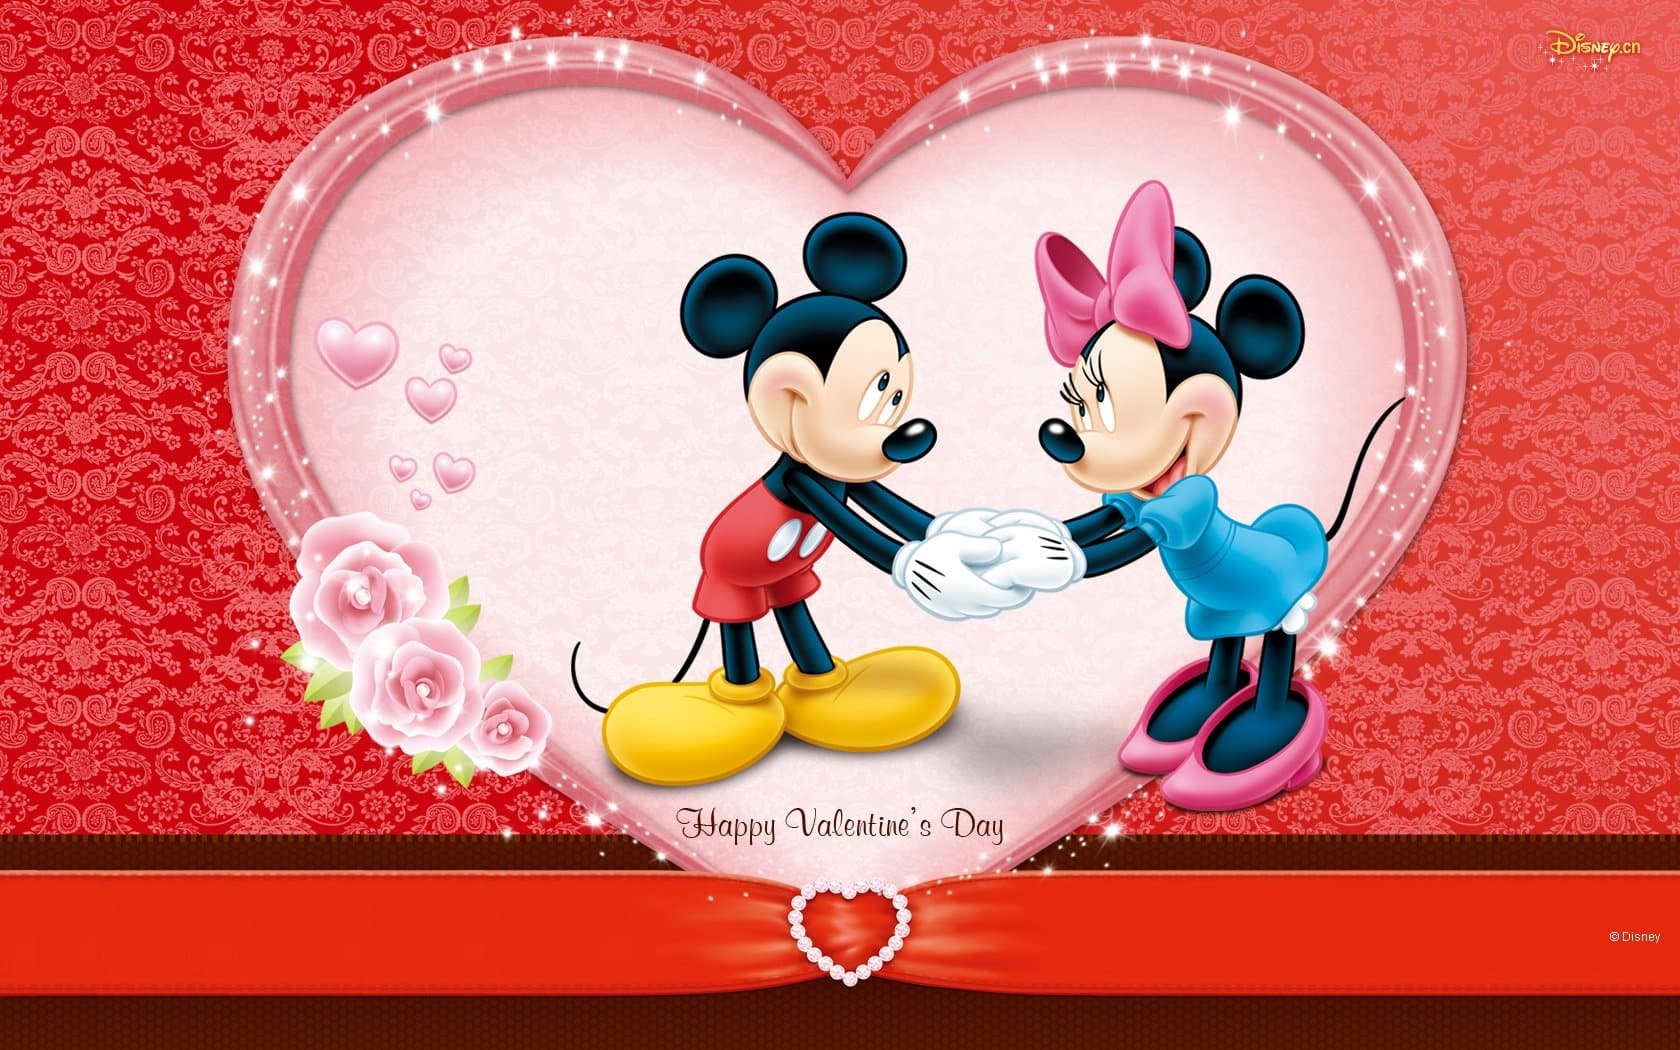 Minnie dan Mickey merayakan Valentine yang penuh warna dengan berdansa